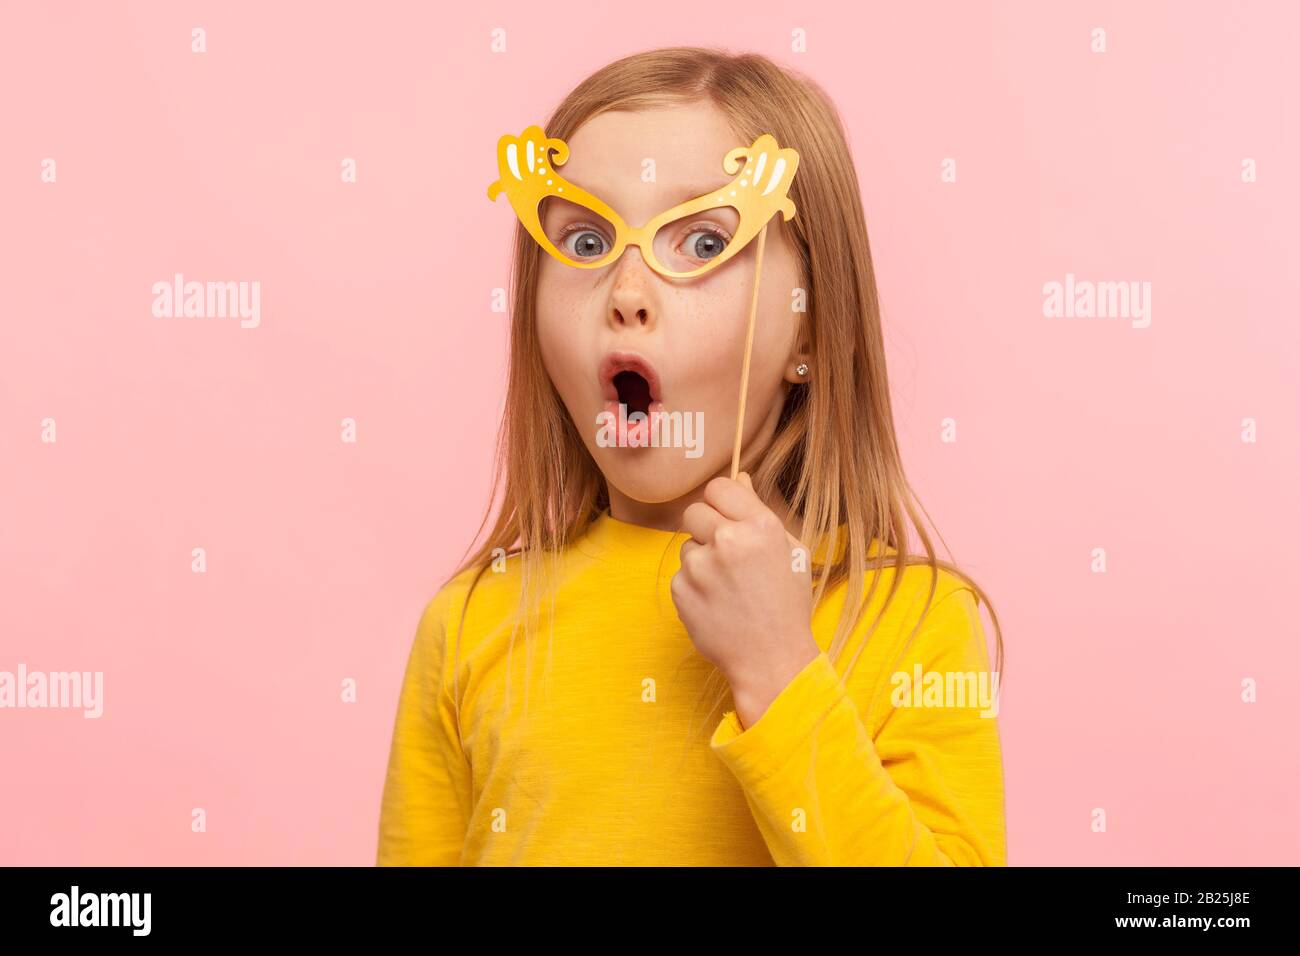 Überraschtes kleines Mädchen, das die Augen mit einer Papierbrille bedeckt und die Zunge herausragt, frech ein Kind, das Spaß hat, eine Maskenmaske trägt und schockiert aussieht. Stockfoto